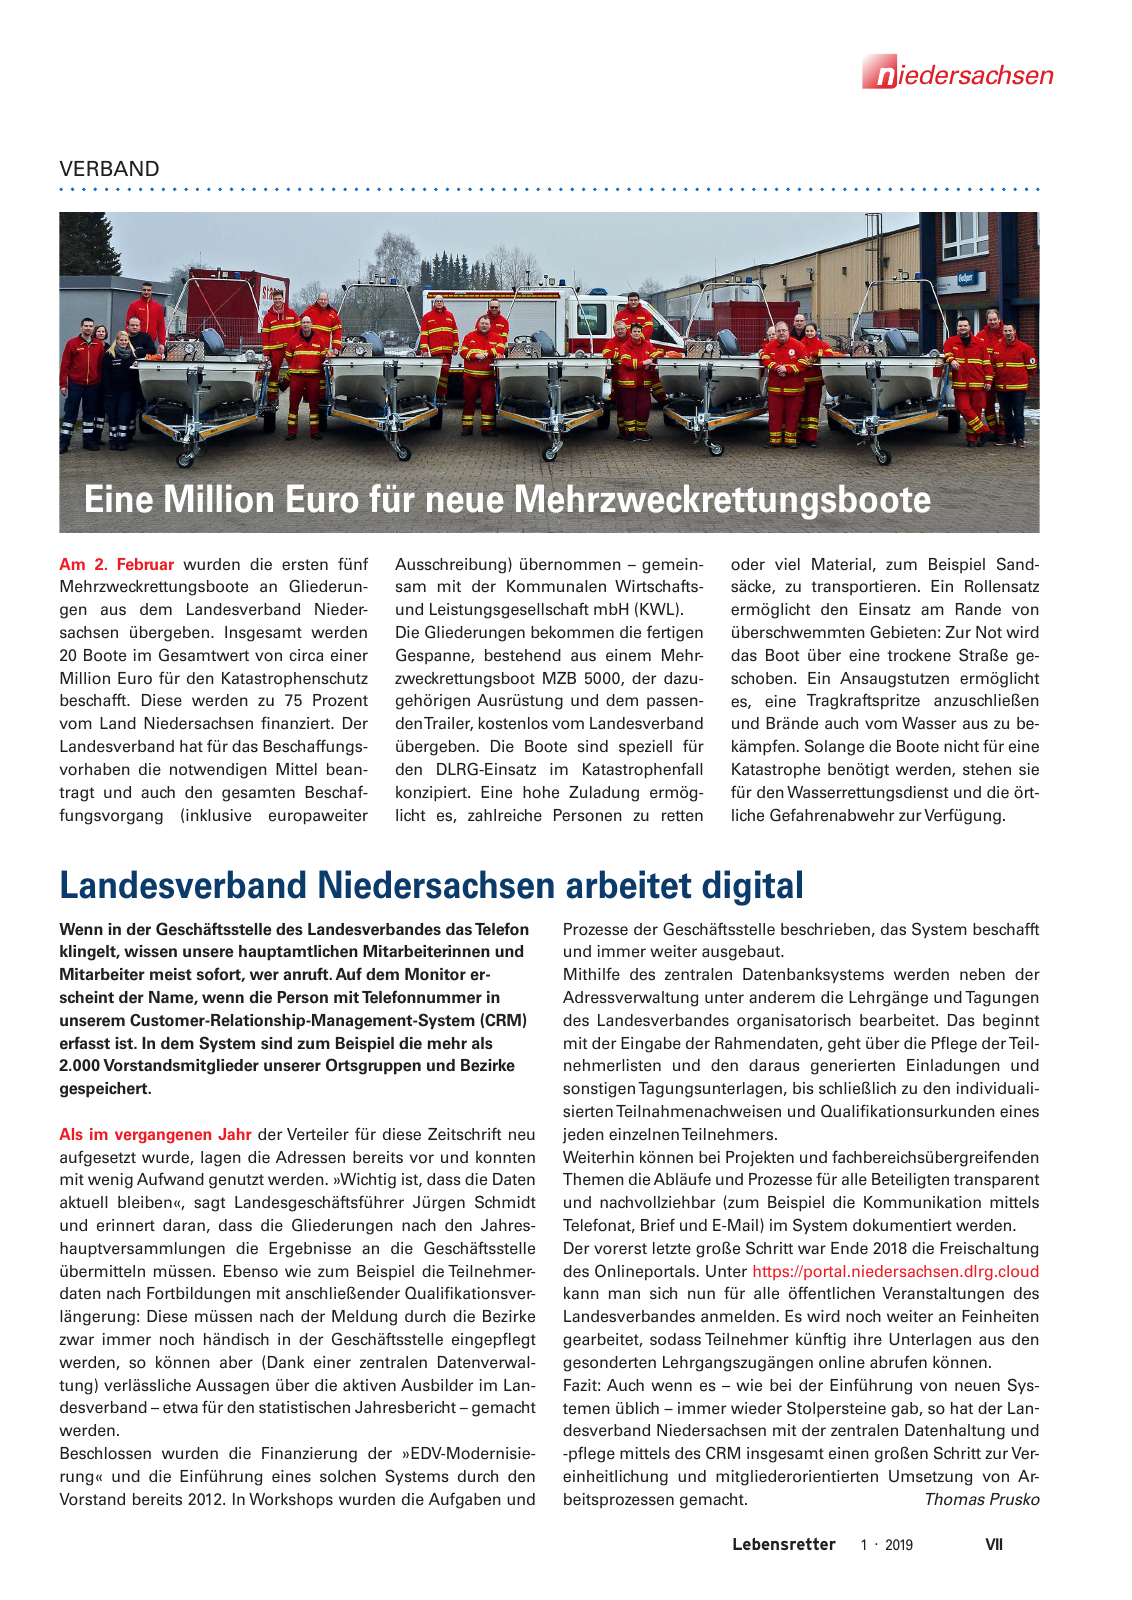 Vorschau Lebensretter 1/2019 –  Regionalausgabe Niedersachsen Seite 9